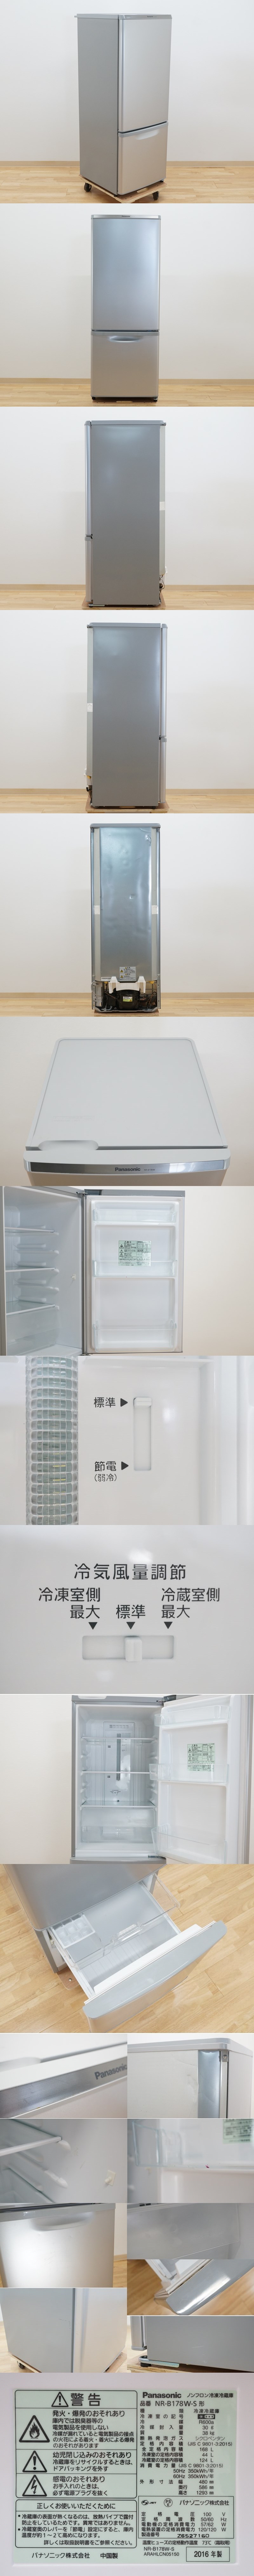 販売済み前ダ:2ドア冷凍冷蔵庫 168L NR-B178W-S シルバー 大きめ冷凍室37L お手入れ簡単ガラストレイ ★送料無料★ 100リットル～